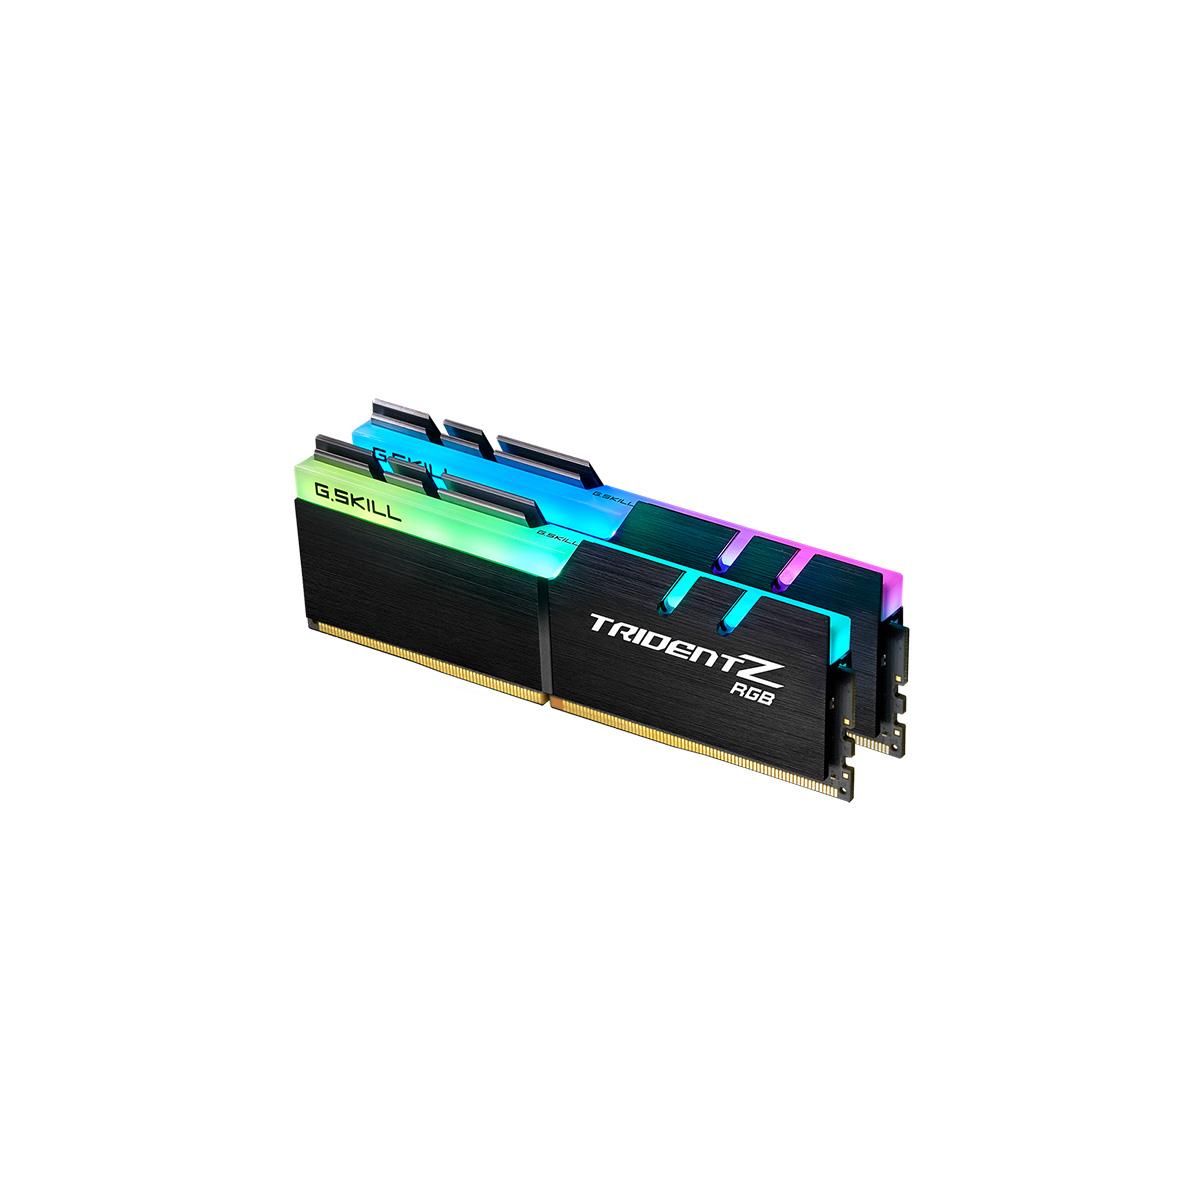 MEMORIA DIMM DDR4 G.SKILL (F4-4000C18D-64GTZR) 64GB (2X32GB) 4000 MHZ, TRIDENT Z RGB - GSKILL